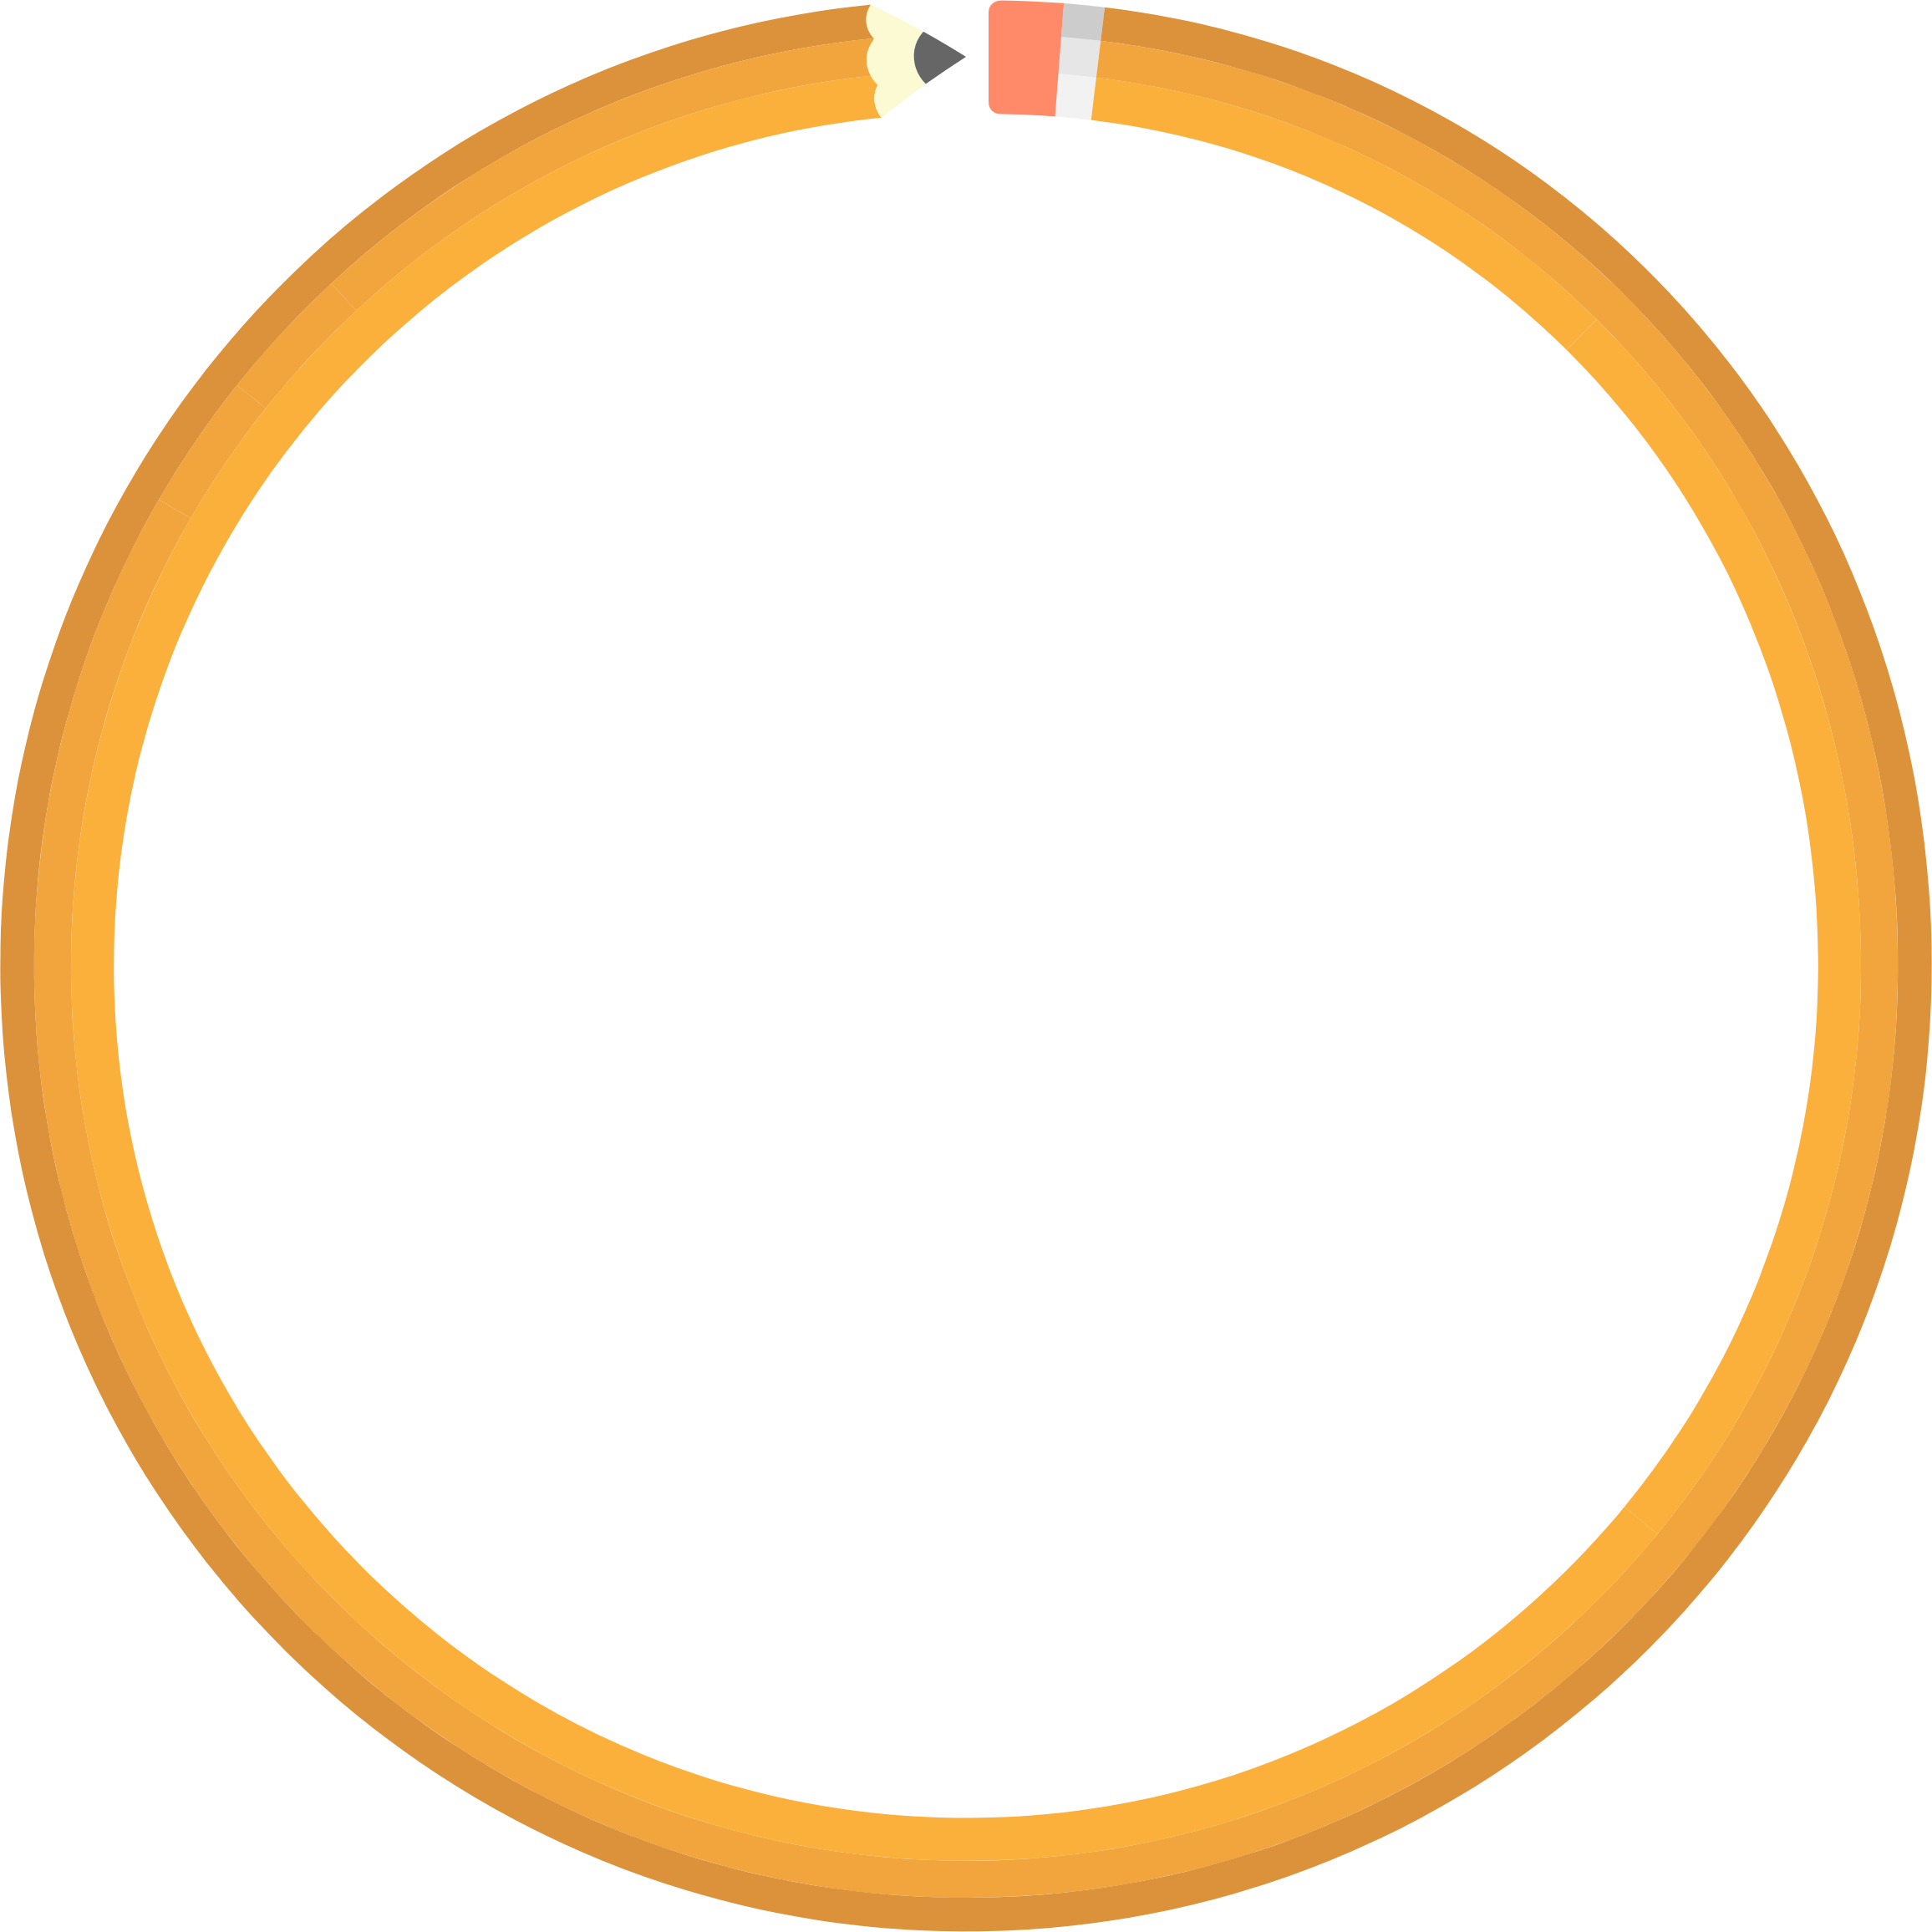 Big Image - Orange Circle Border Png (2312x2312)